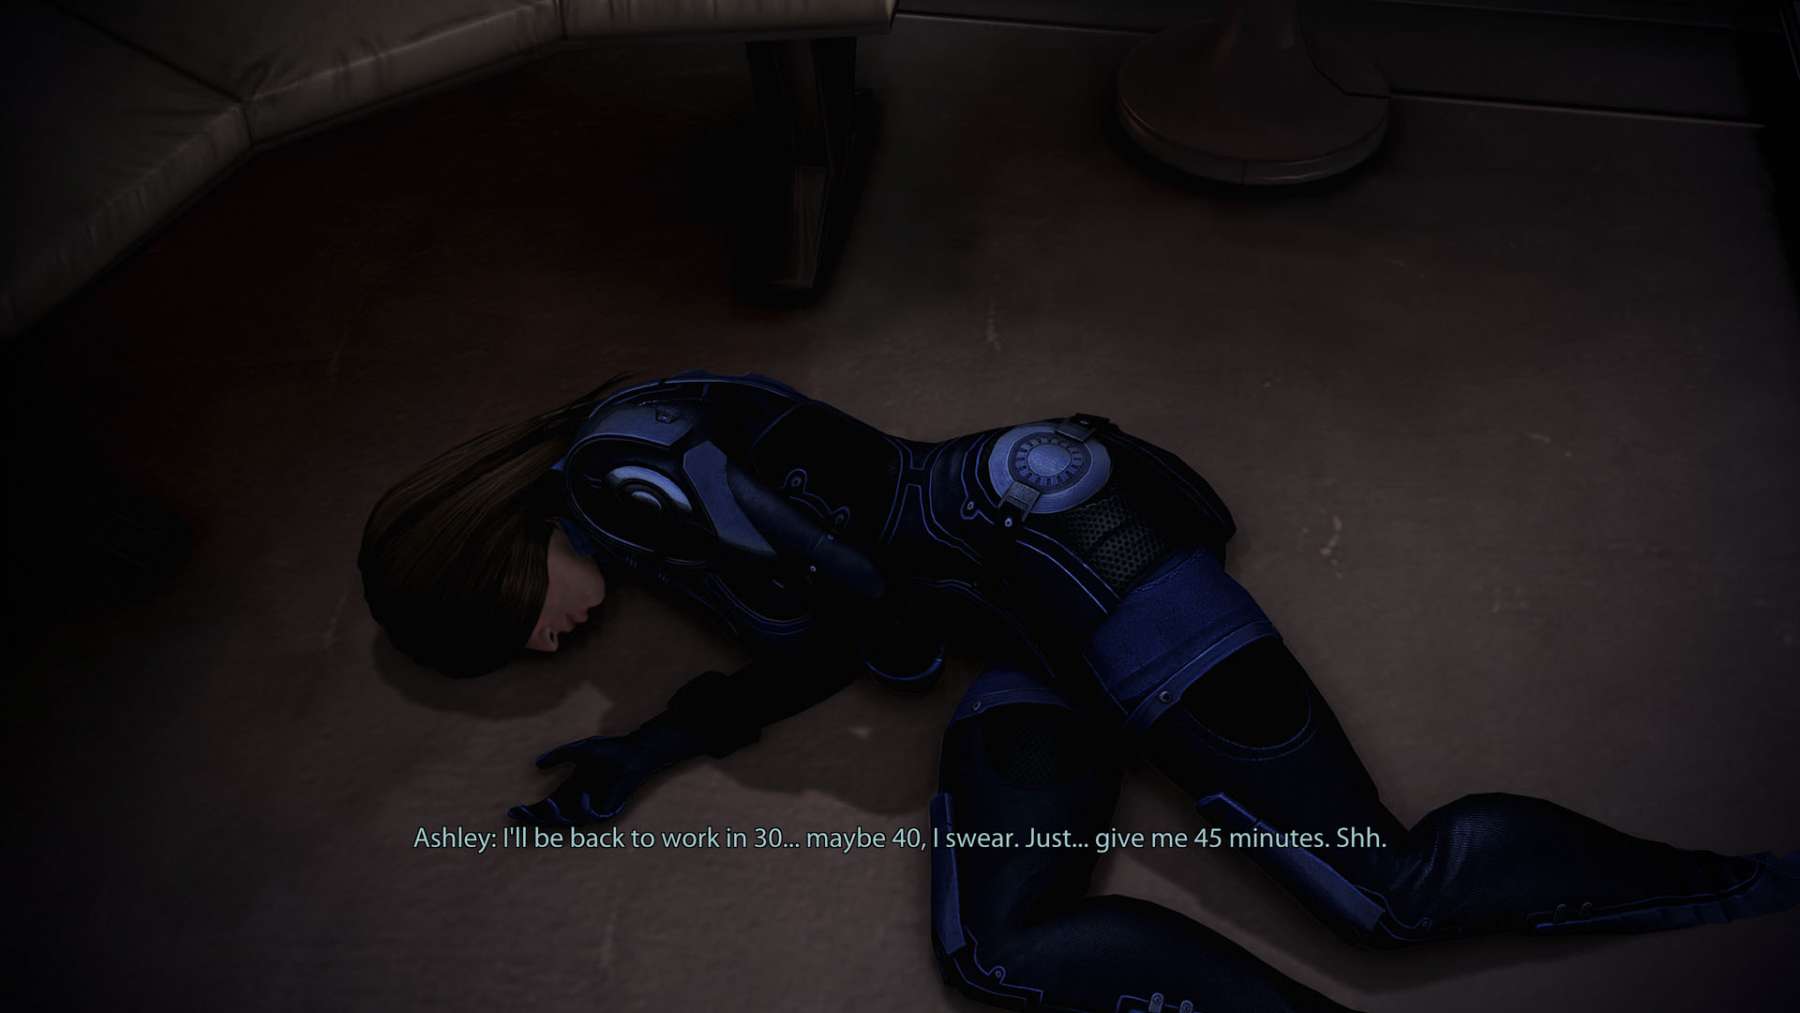 Mass-Effect-3-Drunken-Ashley-1